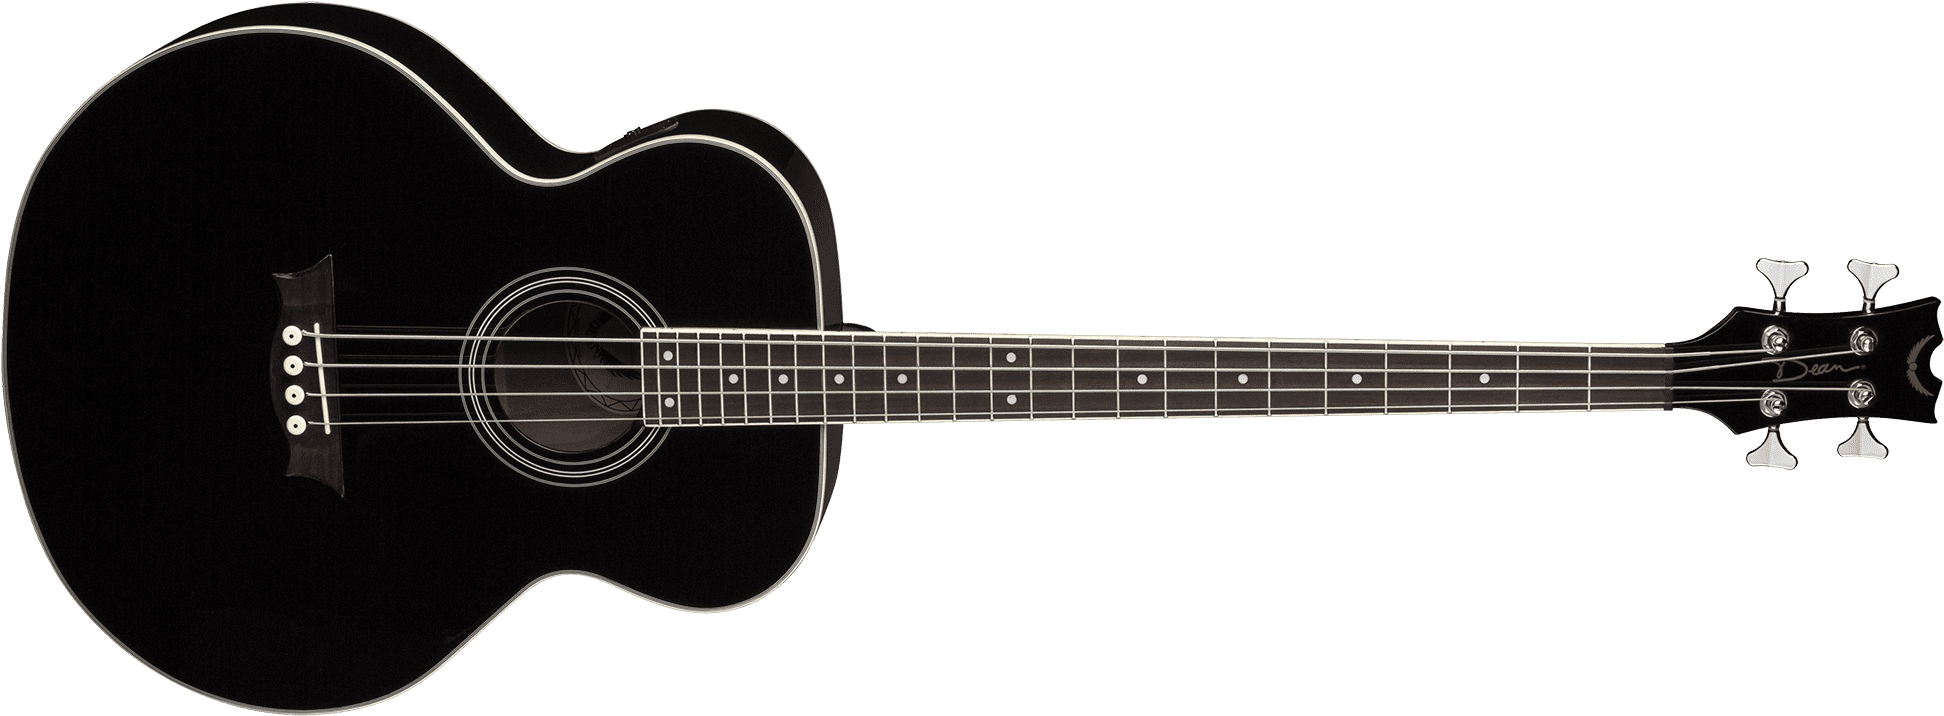 Dean Guitars Image - Dean Acoustic Bass Black (2000x816)